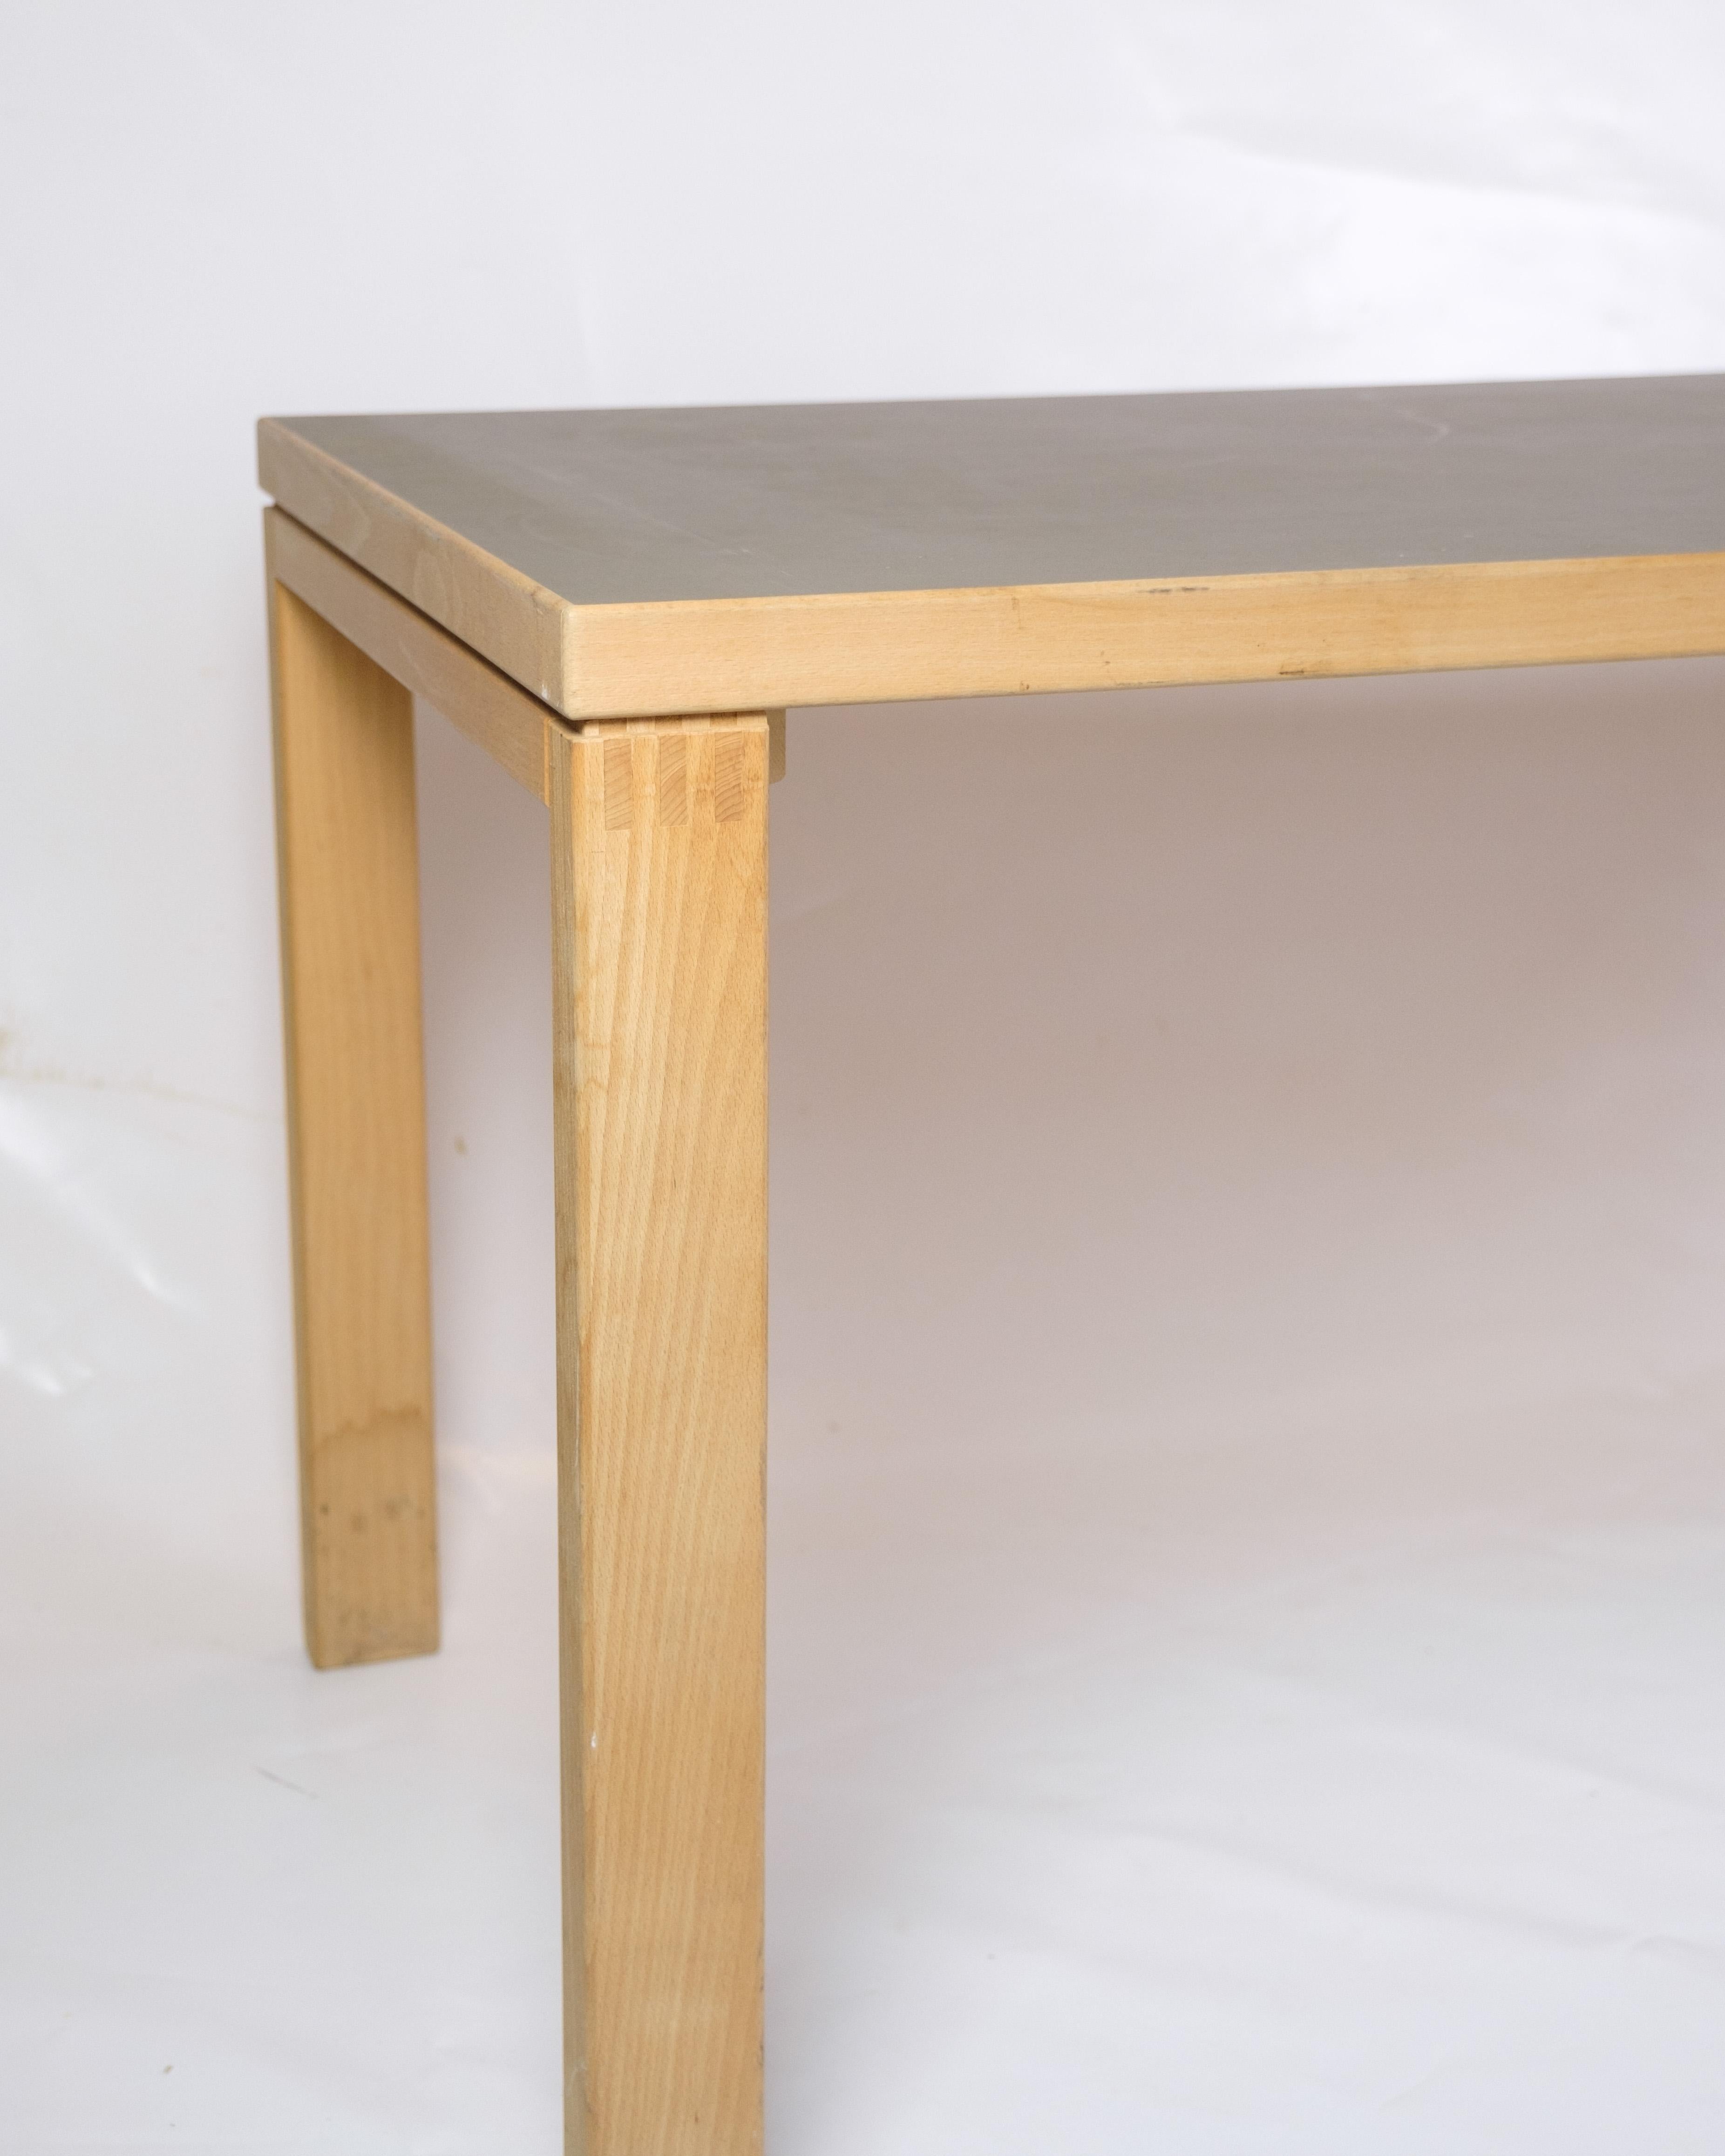 Cette table à manger/bureau polyvalente en bois de hêtre allie fonctionnalité et élégance intemporelle. Le plateau de la table est recouvert de linoléum, ce qui lui confère un aspect durable et élégant.

Conçue par le célèbre architecte et designer